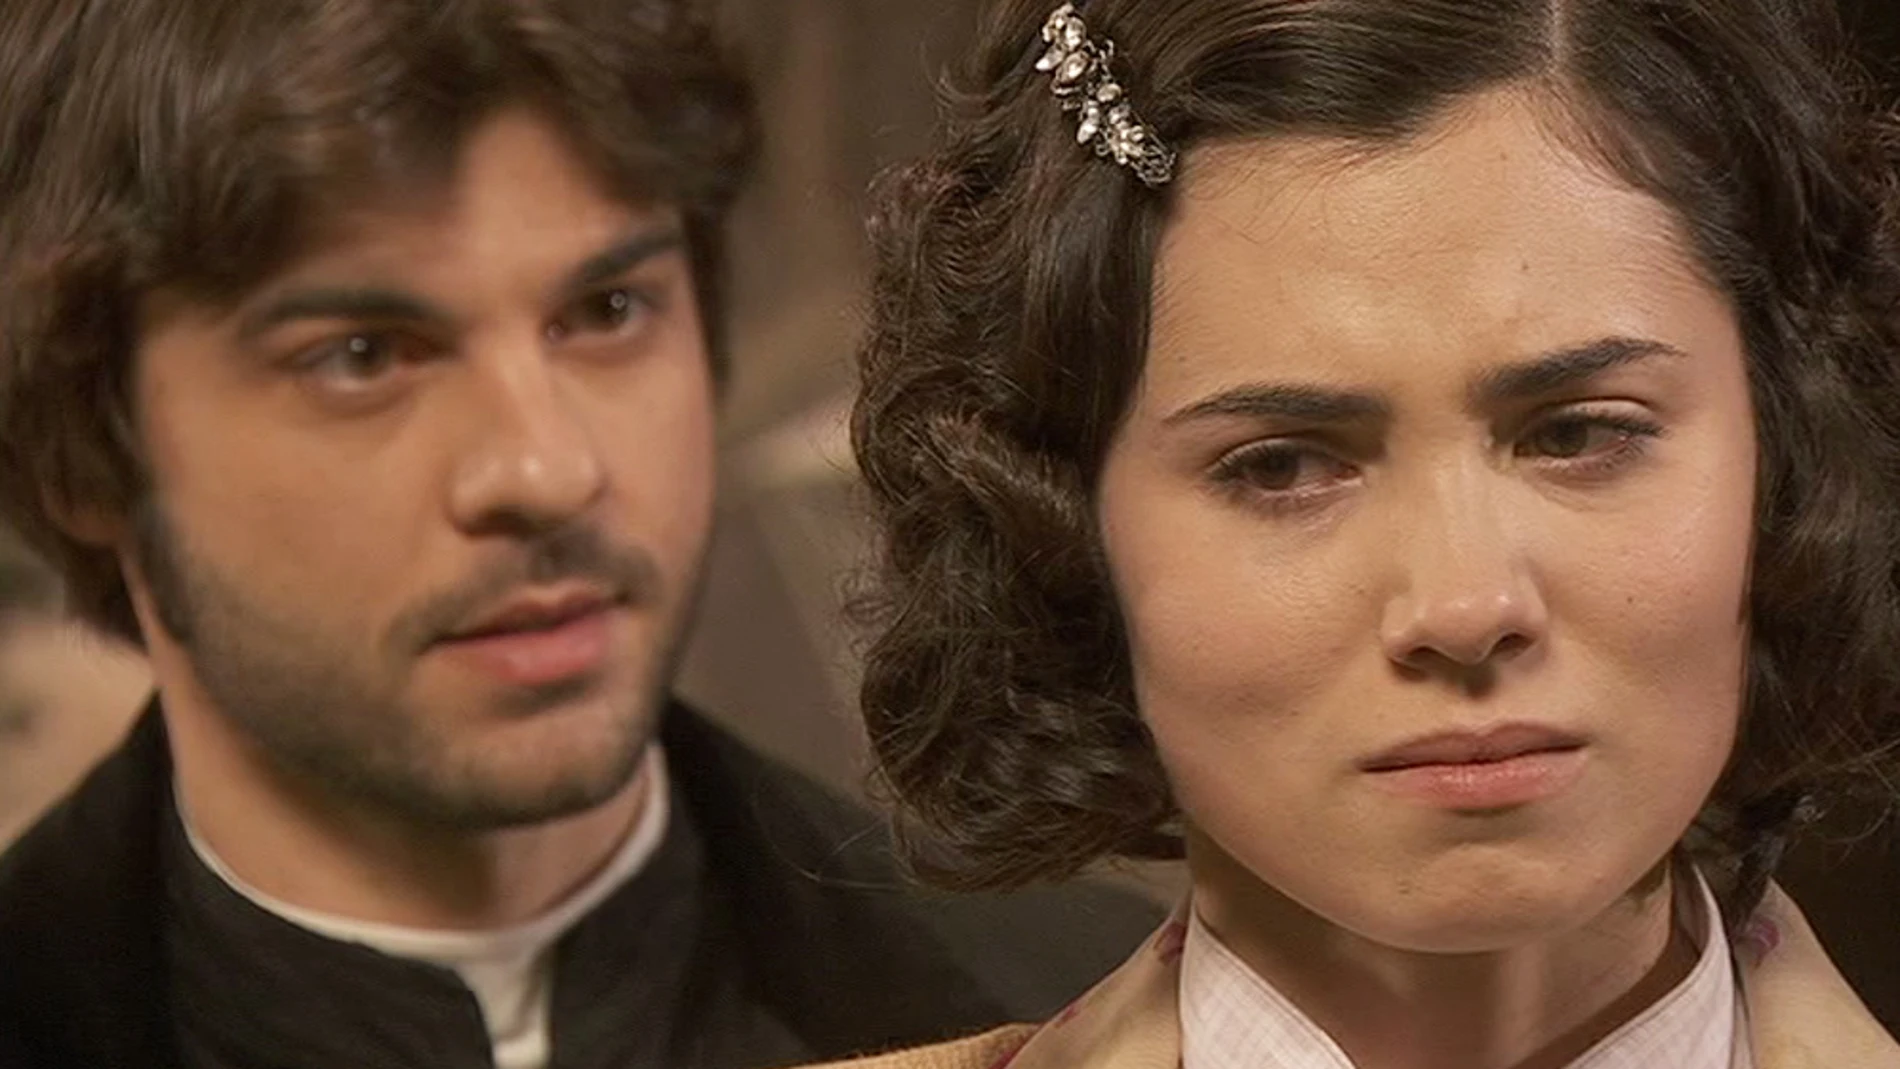 María le confiesa a Gonzalo que fue Fernando quien la violentó